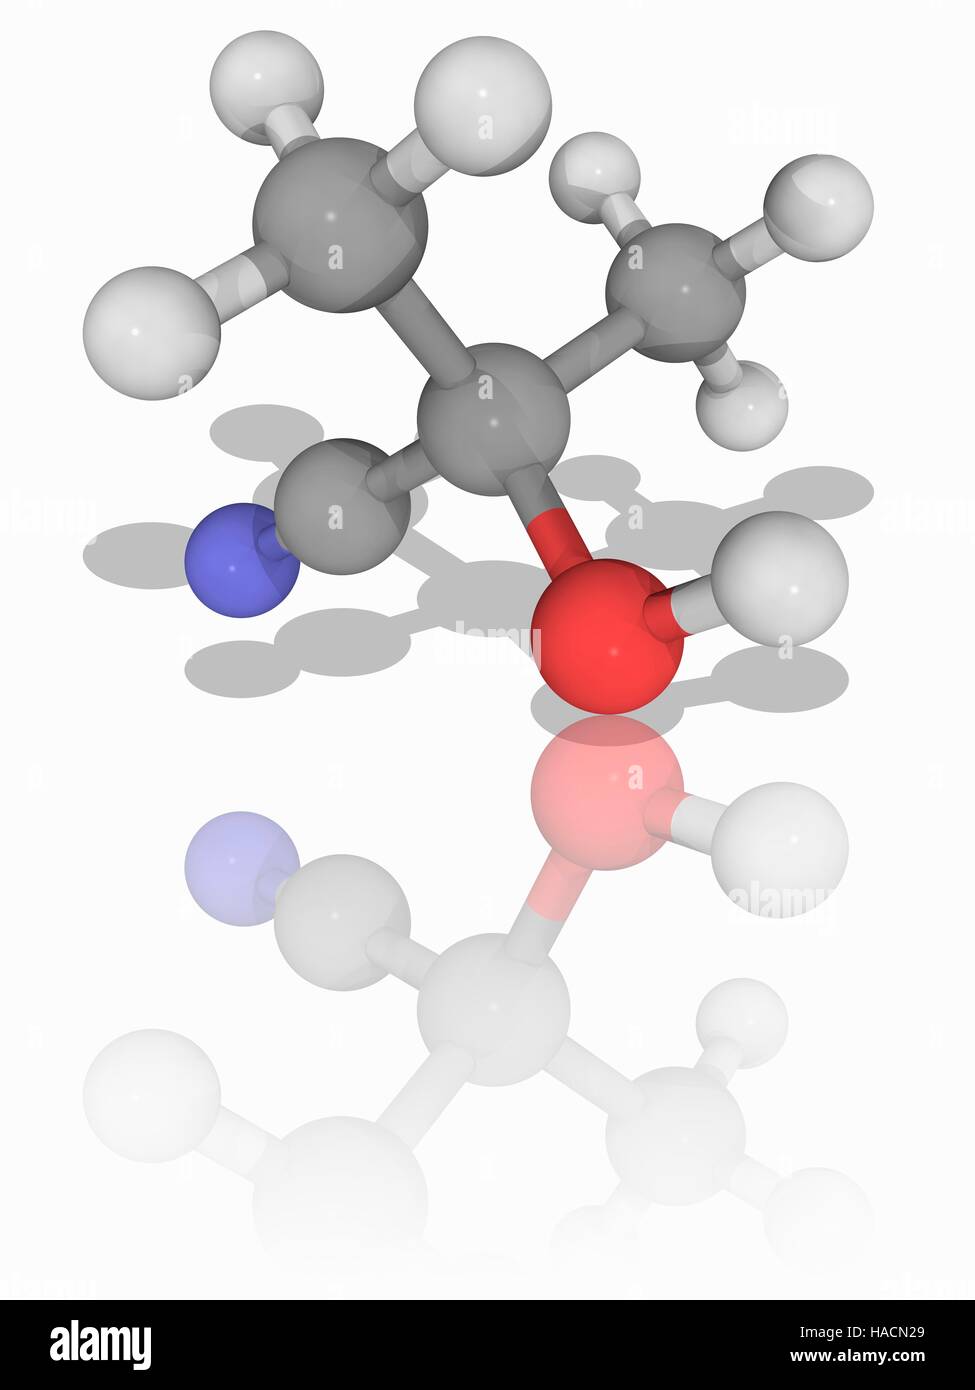 Azeton Cyanohydrin. Molekulares Modell des organischen Verbindung Azeton Cyanohydrin (C4. H7. NAVI). Diese organische Verbindung wird bei der Herstellung von Kunststoffen wie Acryl verwendet. Atome als Kugeln dargestellt werden und sind farblich gekennzeichnet: Kohlenstoff (grau), Wasserstoff (weiß), Stickstoff (blau) und Sauerstoff (rot). Abbildung. Stockfoto